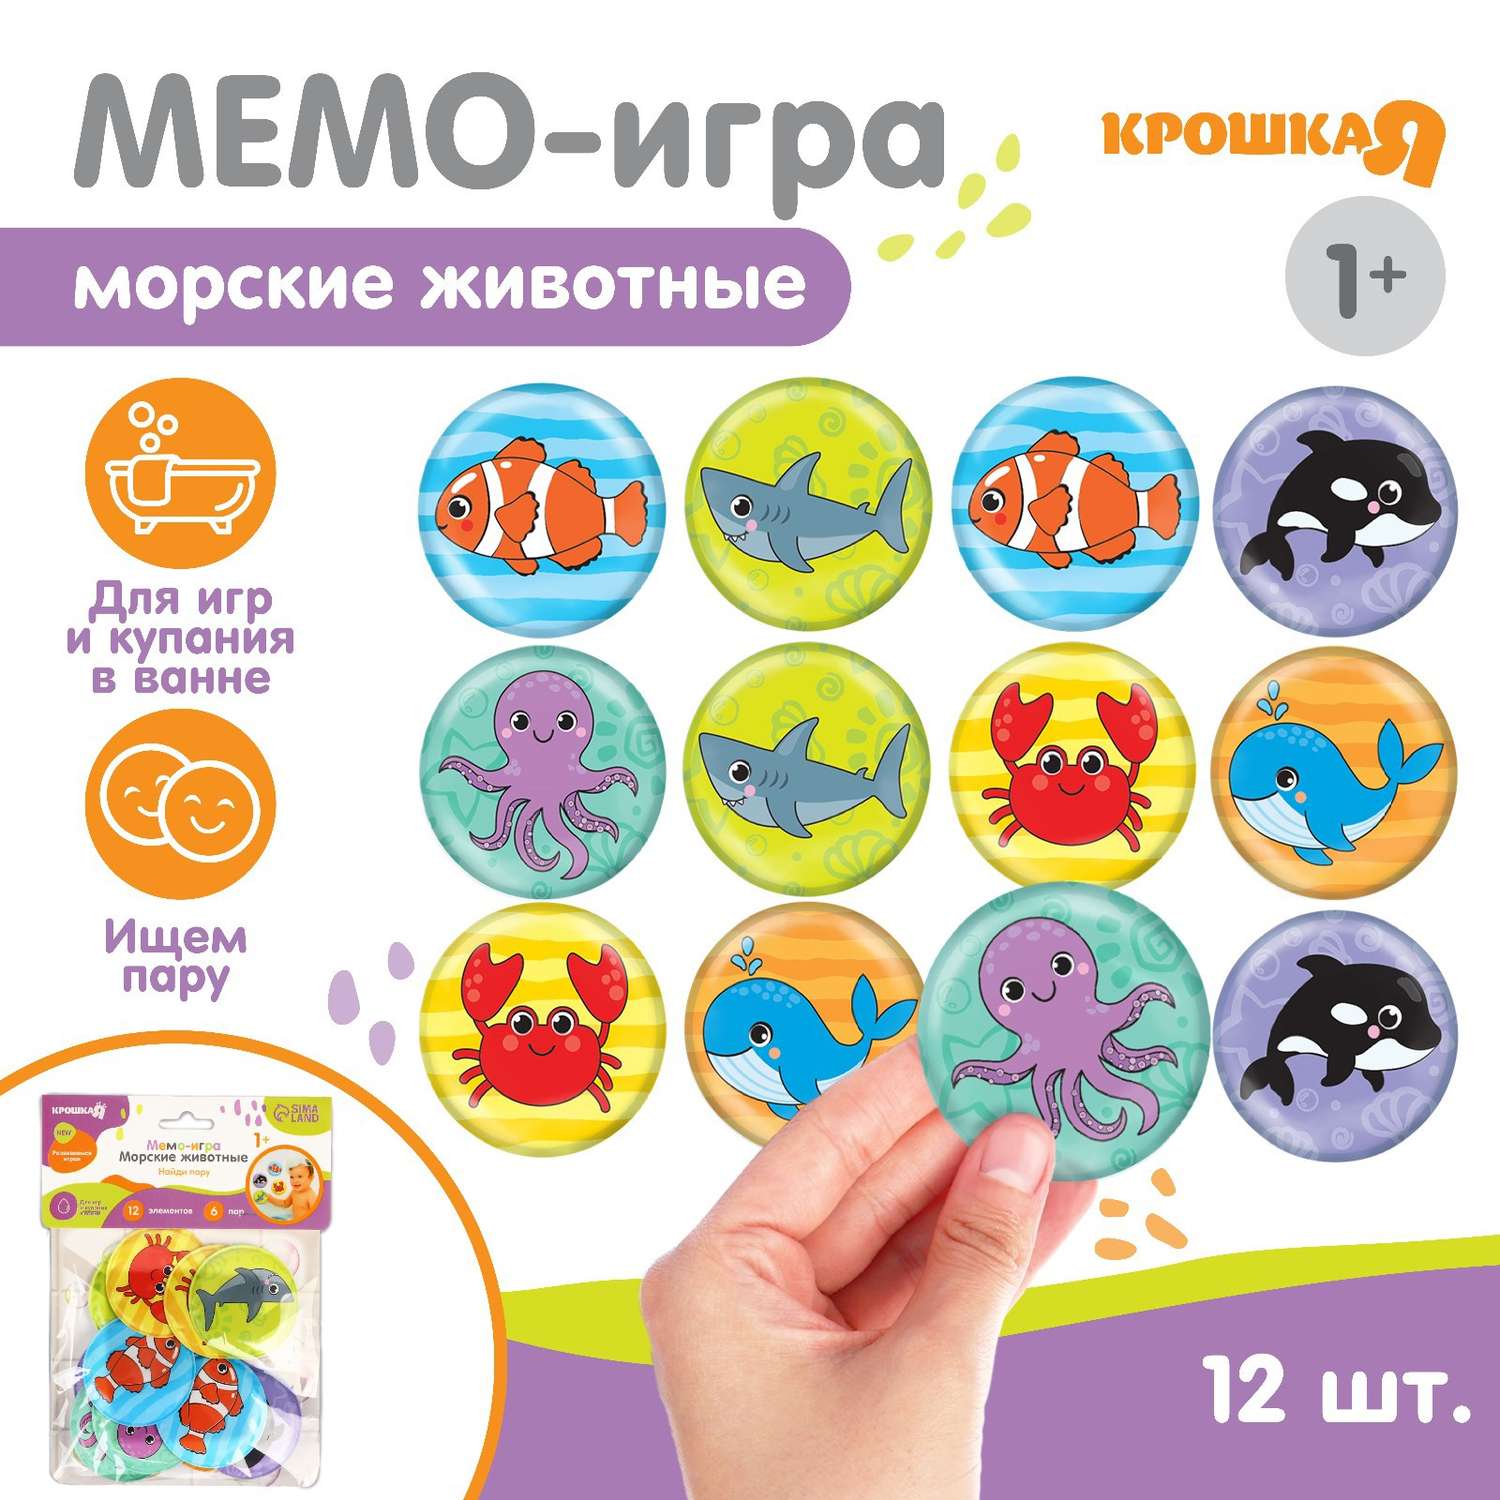 Мемо-игра: Крошка Я развивающие наклейки для игры в ванной «Морские животные» - фото 1